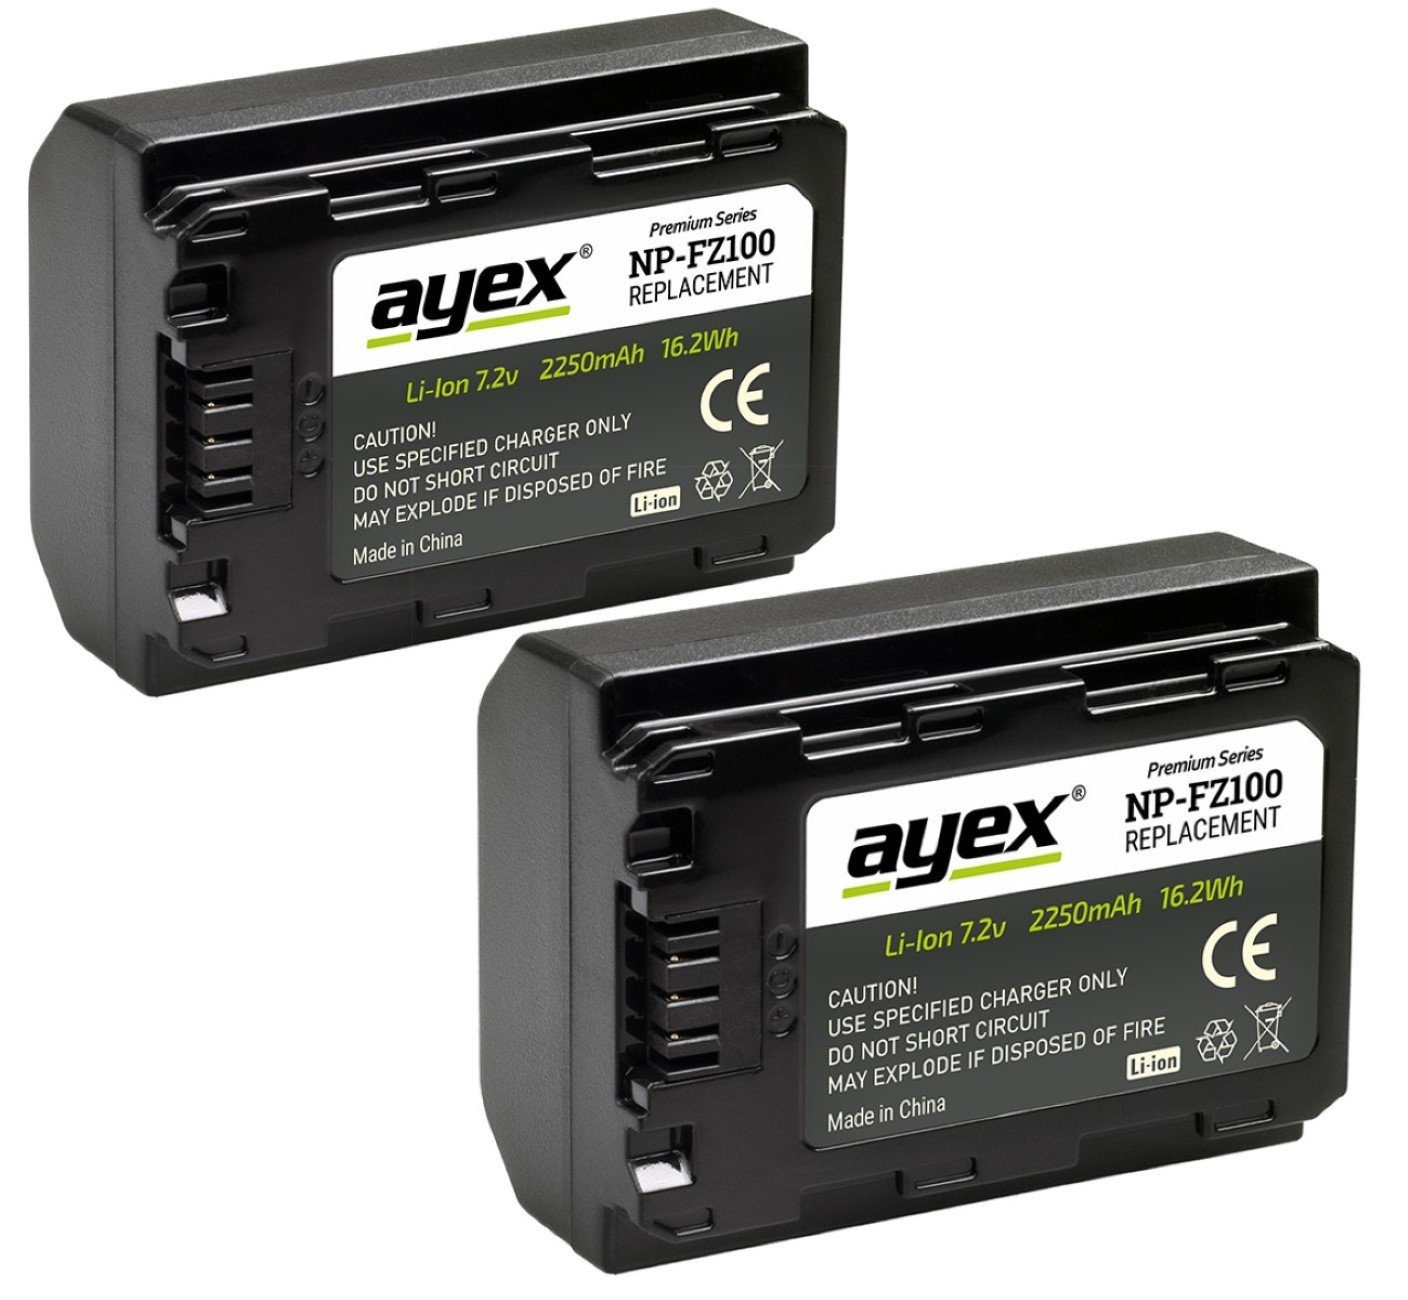 ayex 2x NP-FZ100 Akku für Kamera-Akku Sony Dual- Ladegerät 1x USB